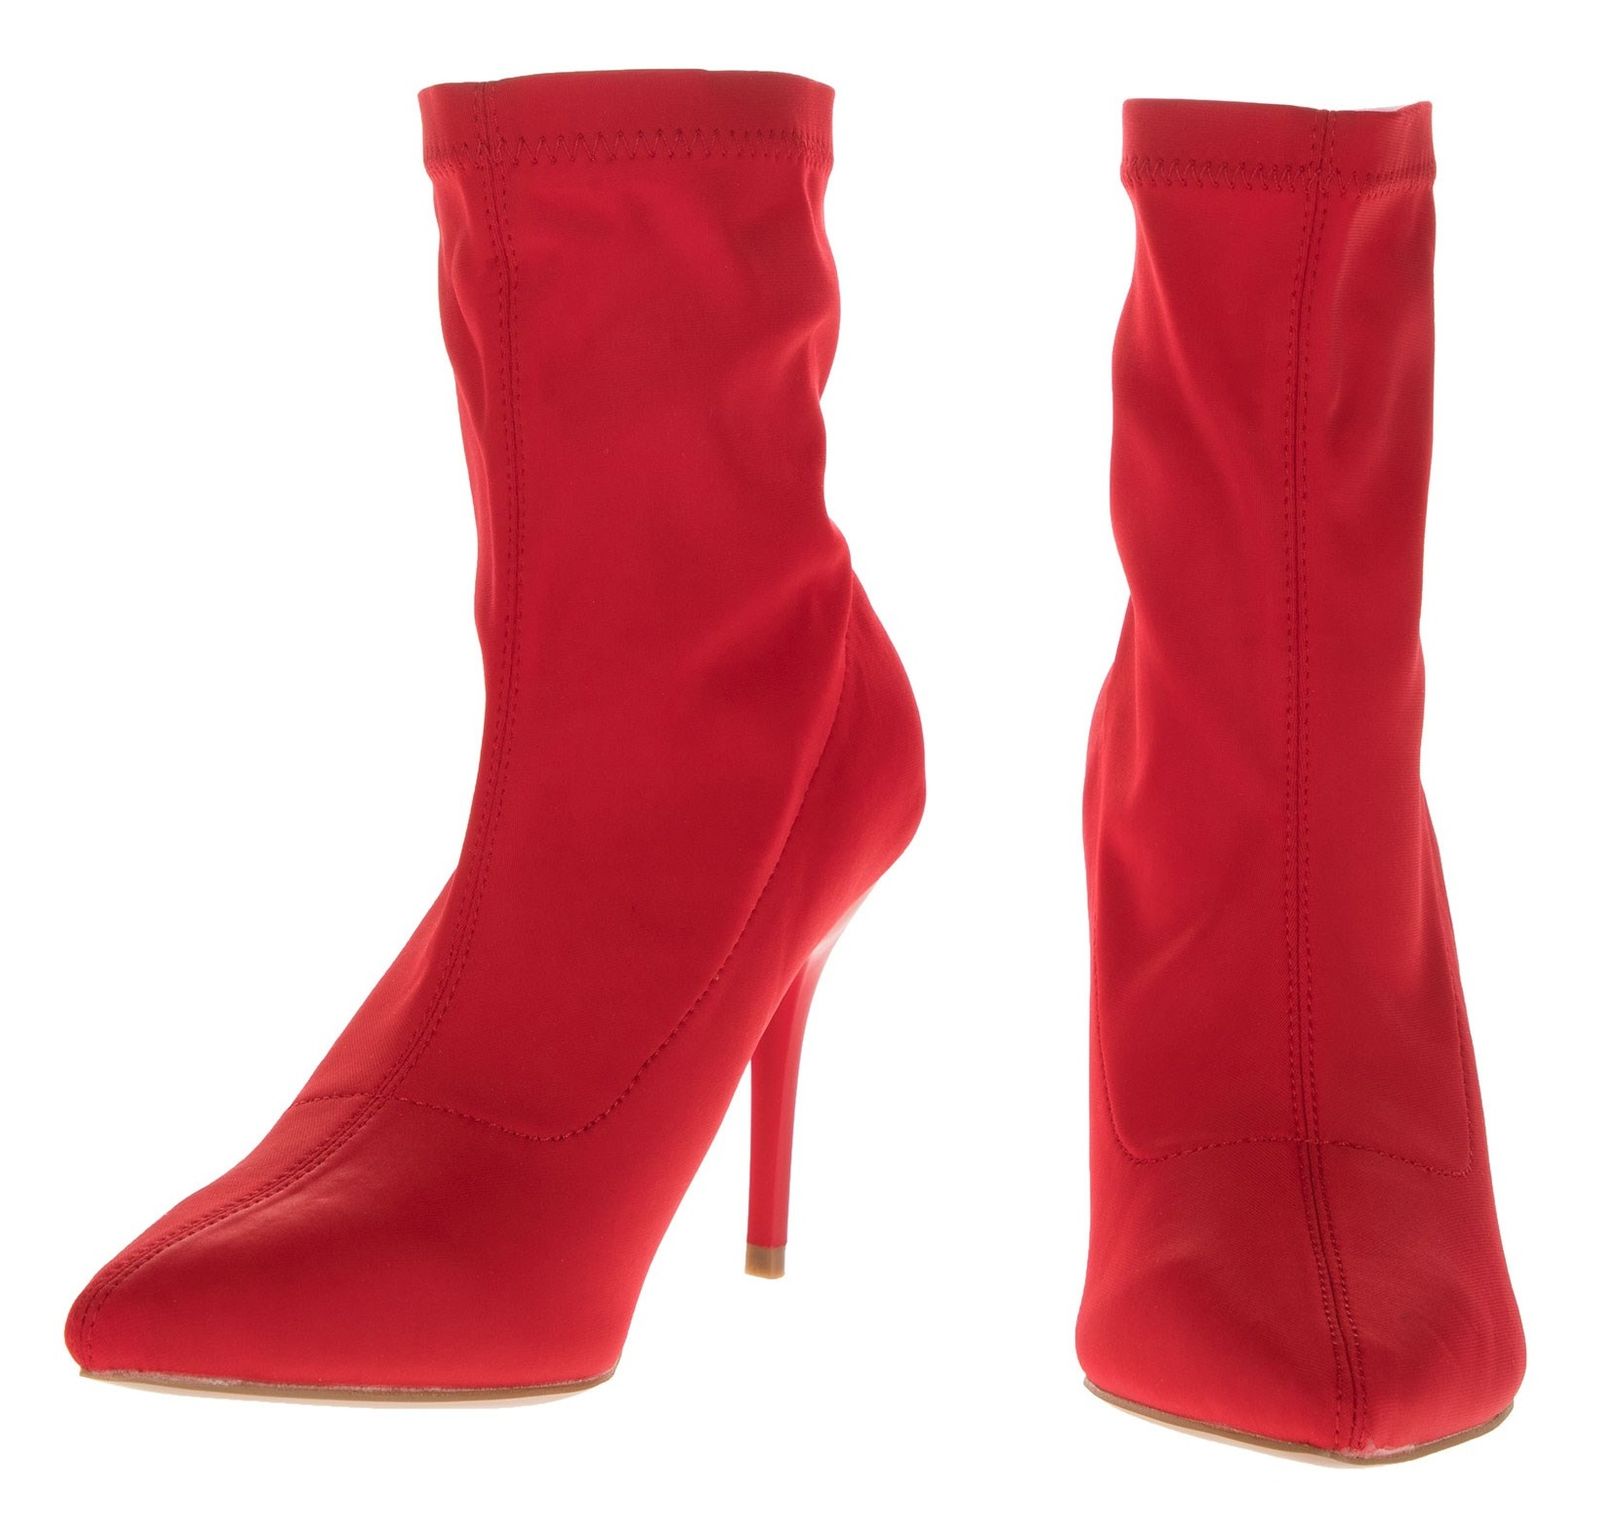 کفش پاشنه بلند زنانه - مالین - قرمز - 4